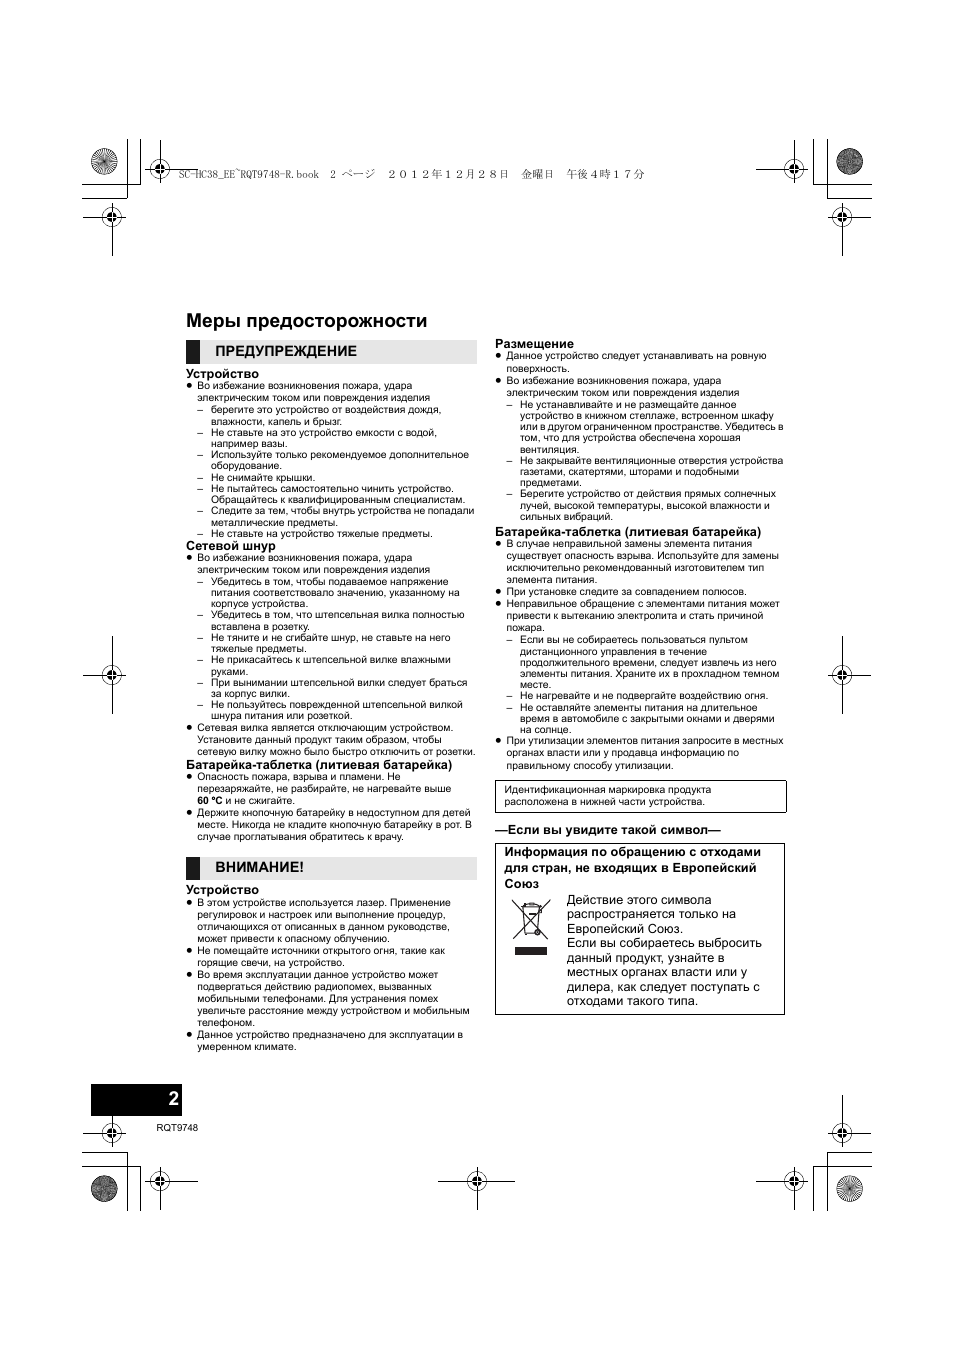 Меры предосторожности, Предупреждение внимание | Инструкция по эксплуатации Panasonic SC-HC38 | Страница 2 / 40